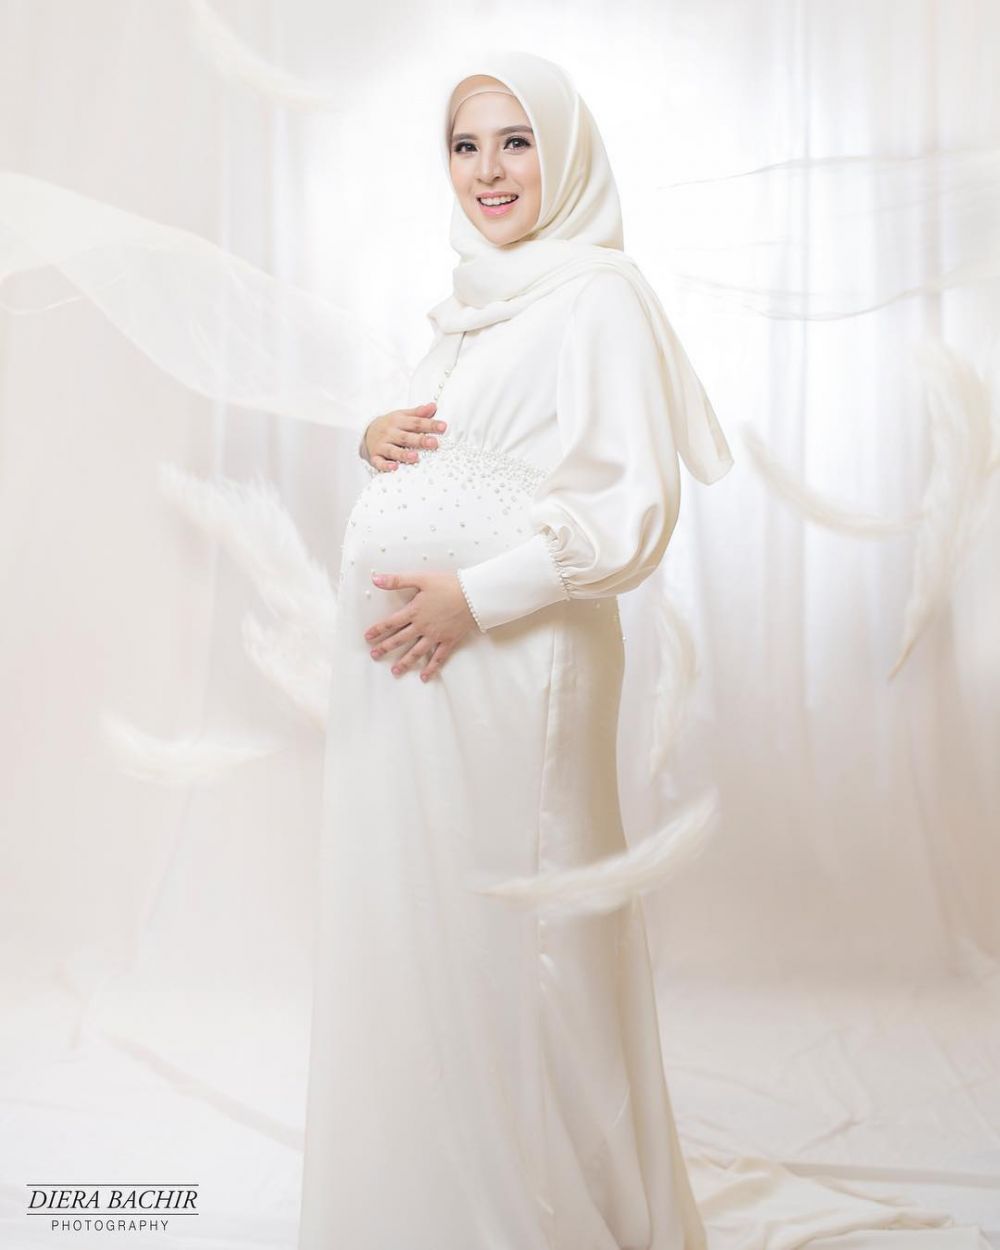 Inspirasi gaya maternity 10 seleb berhijab, simpel dan elegan